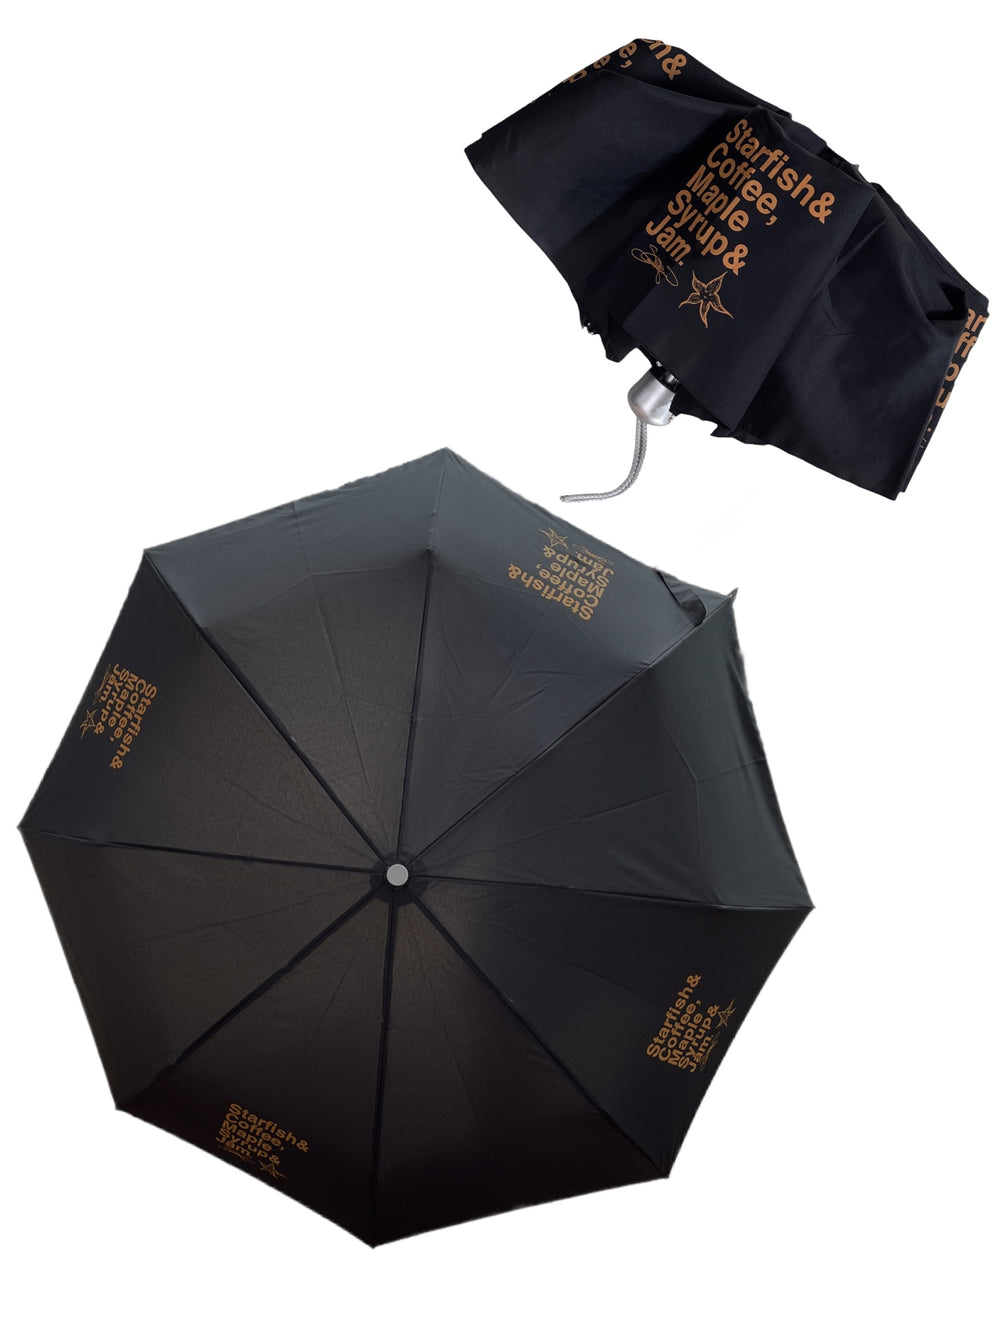 Prince – Starfish & Coffee Official Mini Umbrella Signature Edition Peach & Black Prince